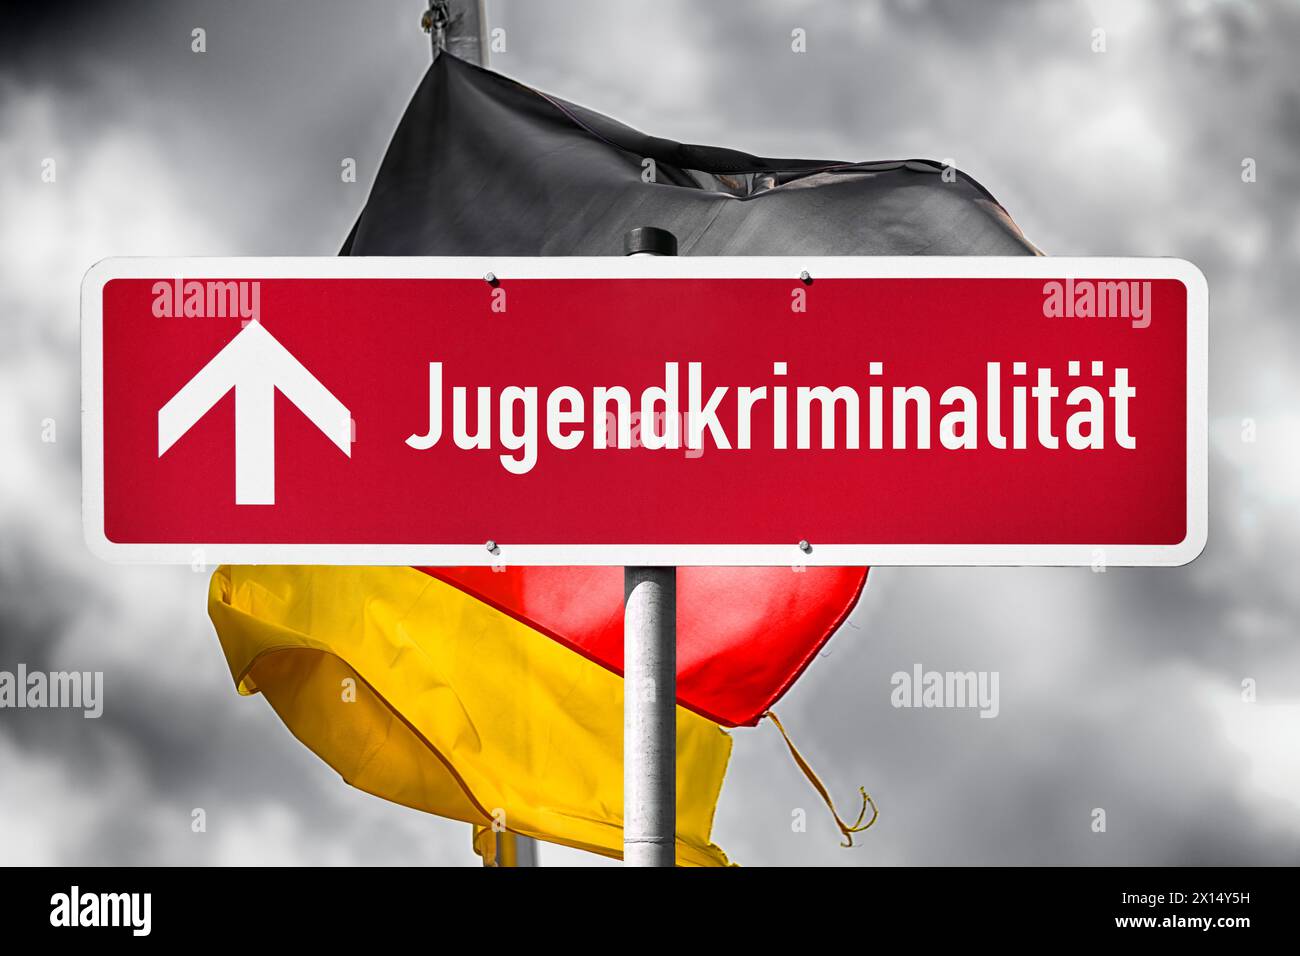 Segno rosso con le parole "Jugendkriminalität" (delinquenza giovanile) e Una freccia rivolta di fronte a Una bandiera tedesca, fotomontaggio Foto Stock